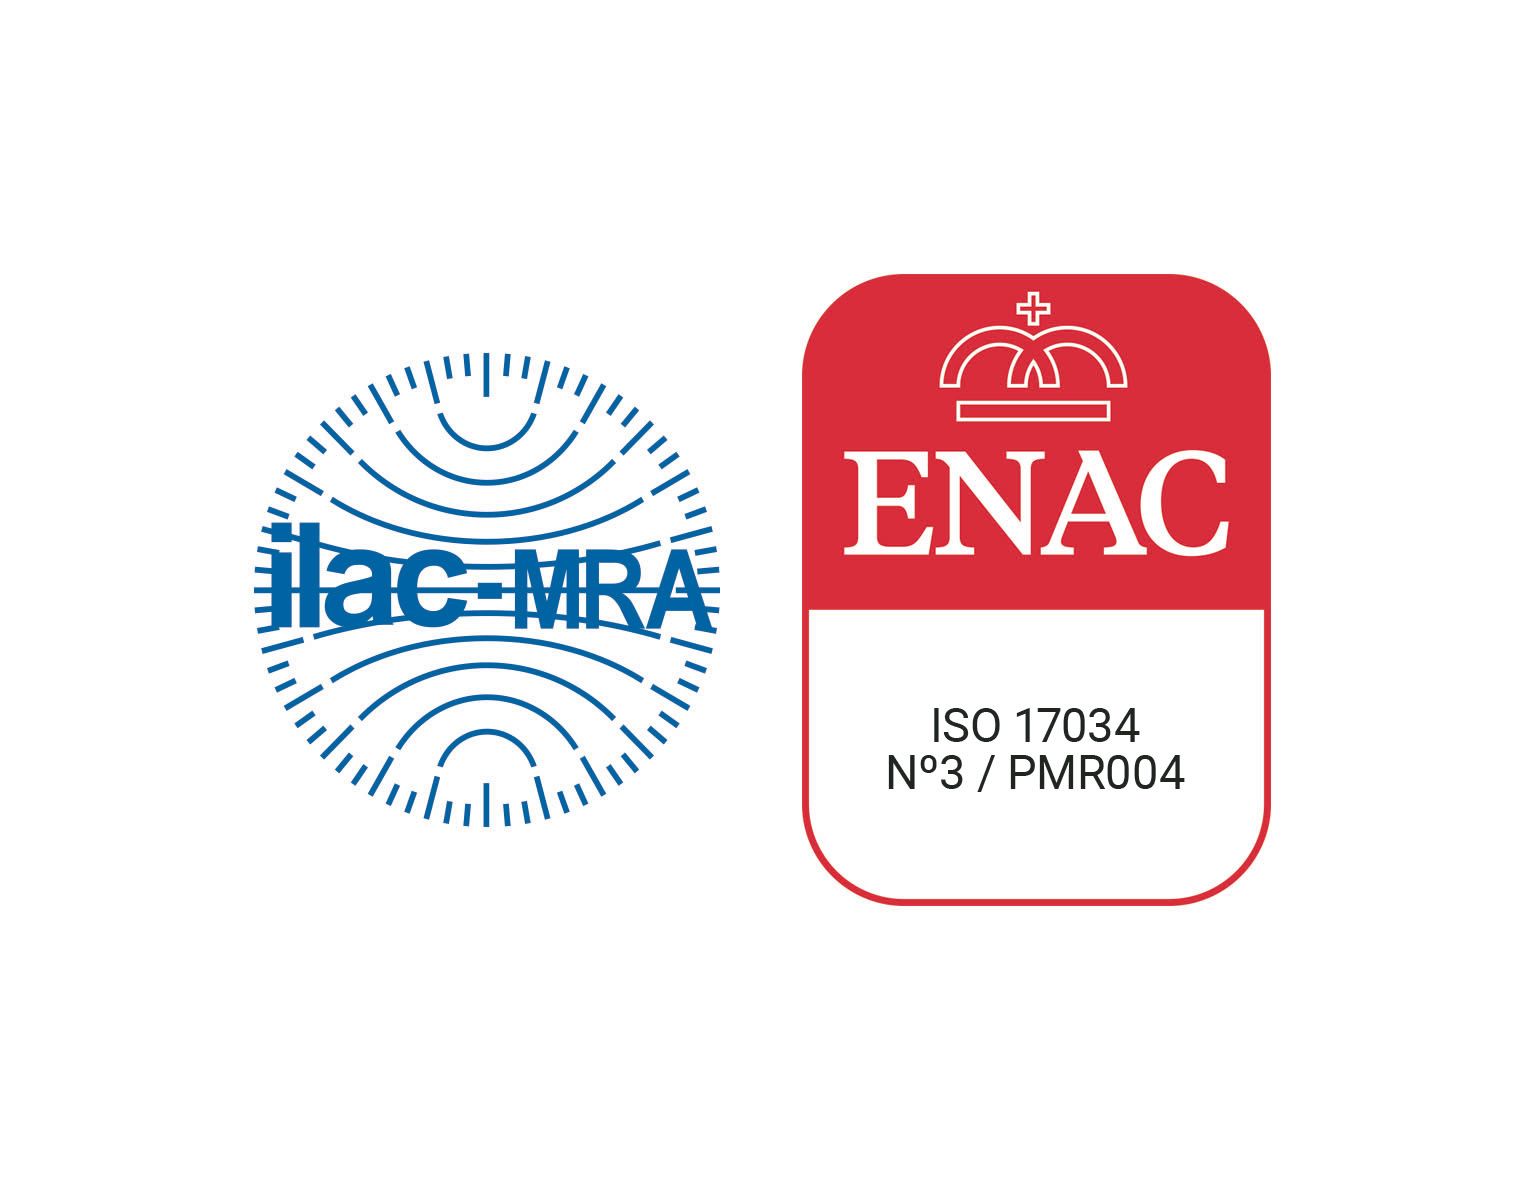 ISC-Science es Productor de Materiales de Referencia acreditado por ENAC con Nº de acreditación 3/PMR004.